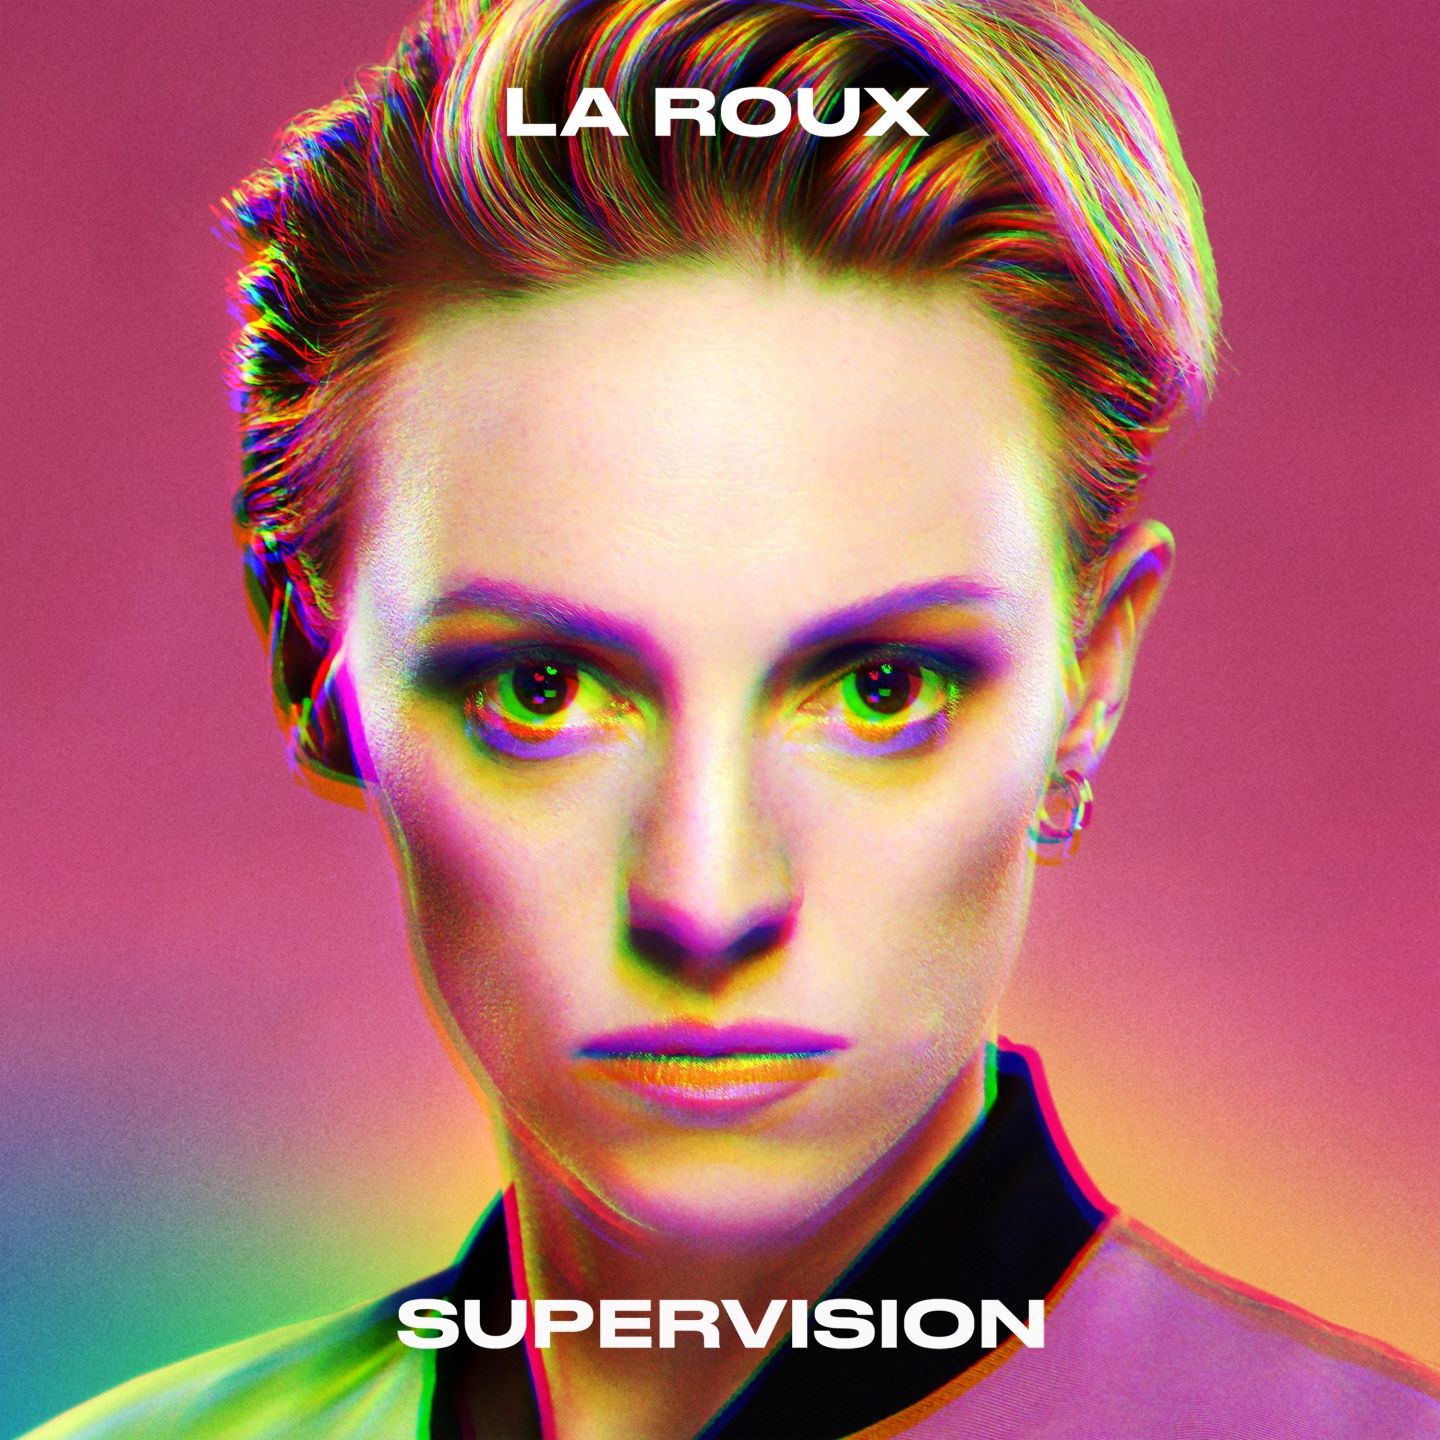 La Roux – Supervision (2020) [FLAC 24bit/96kHz]